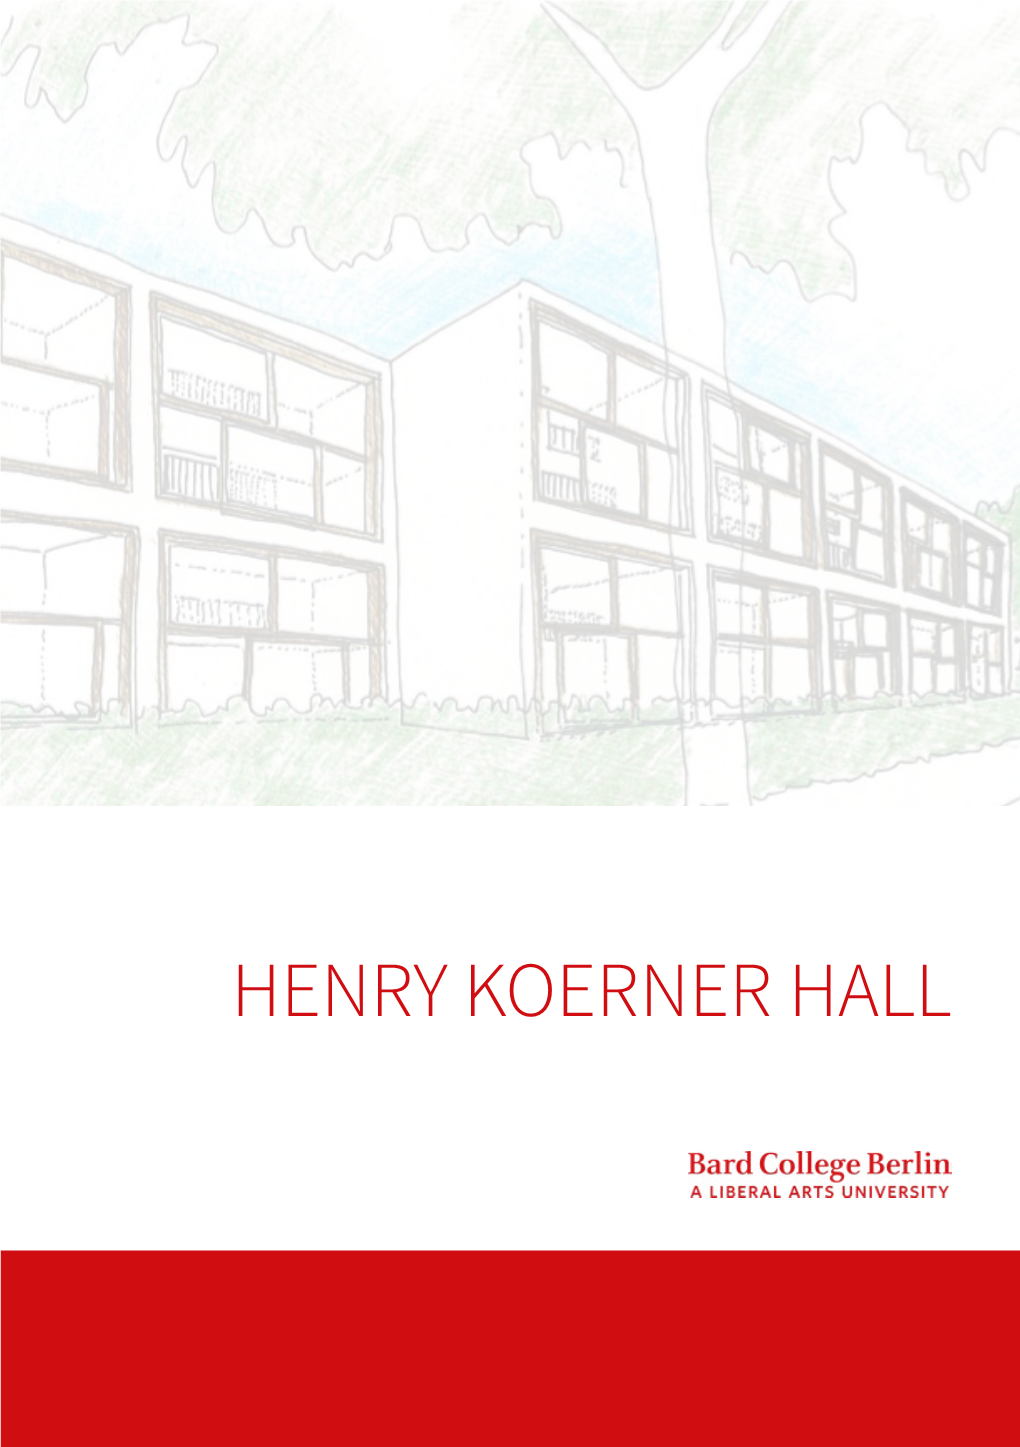 Henry Koerner Hall Festive Opening Henry Koerner Hall